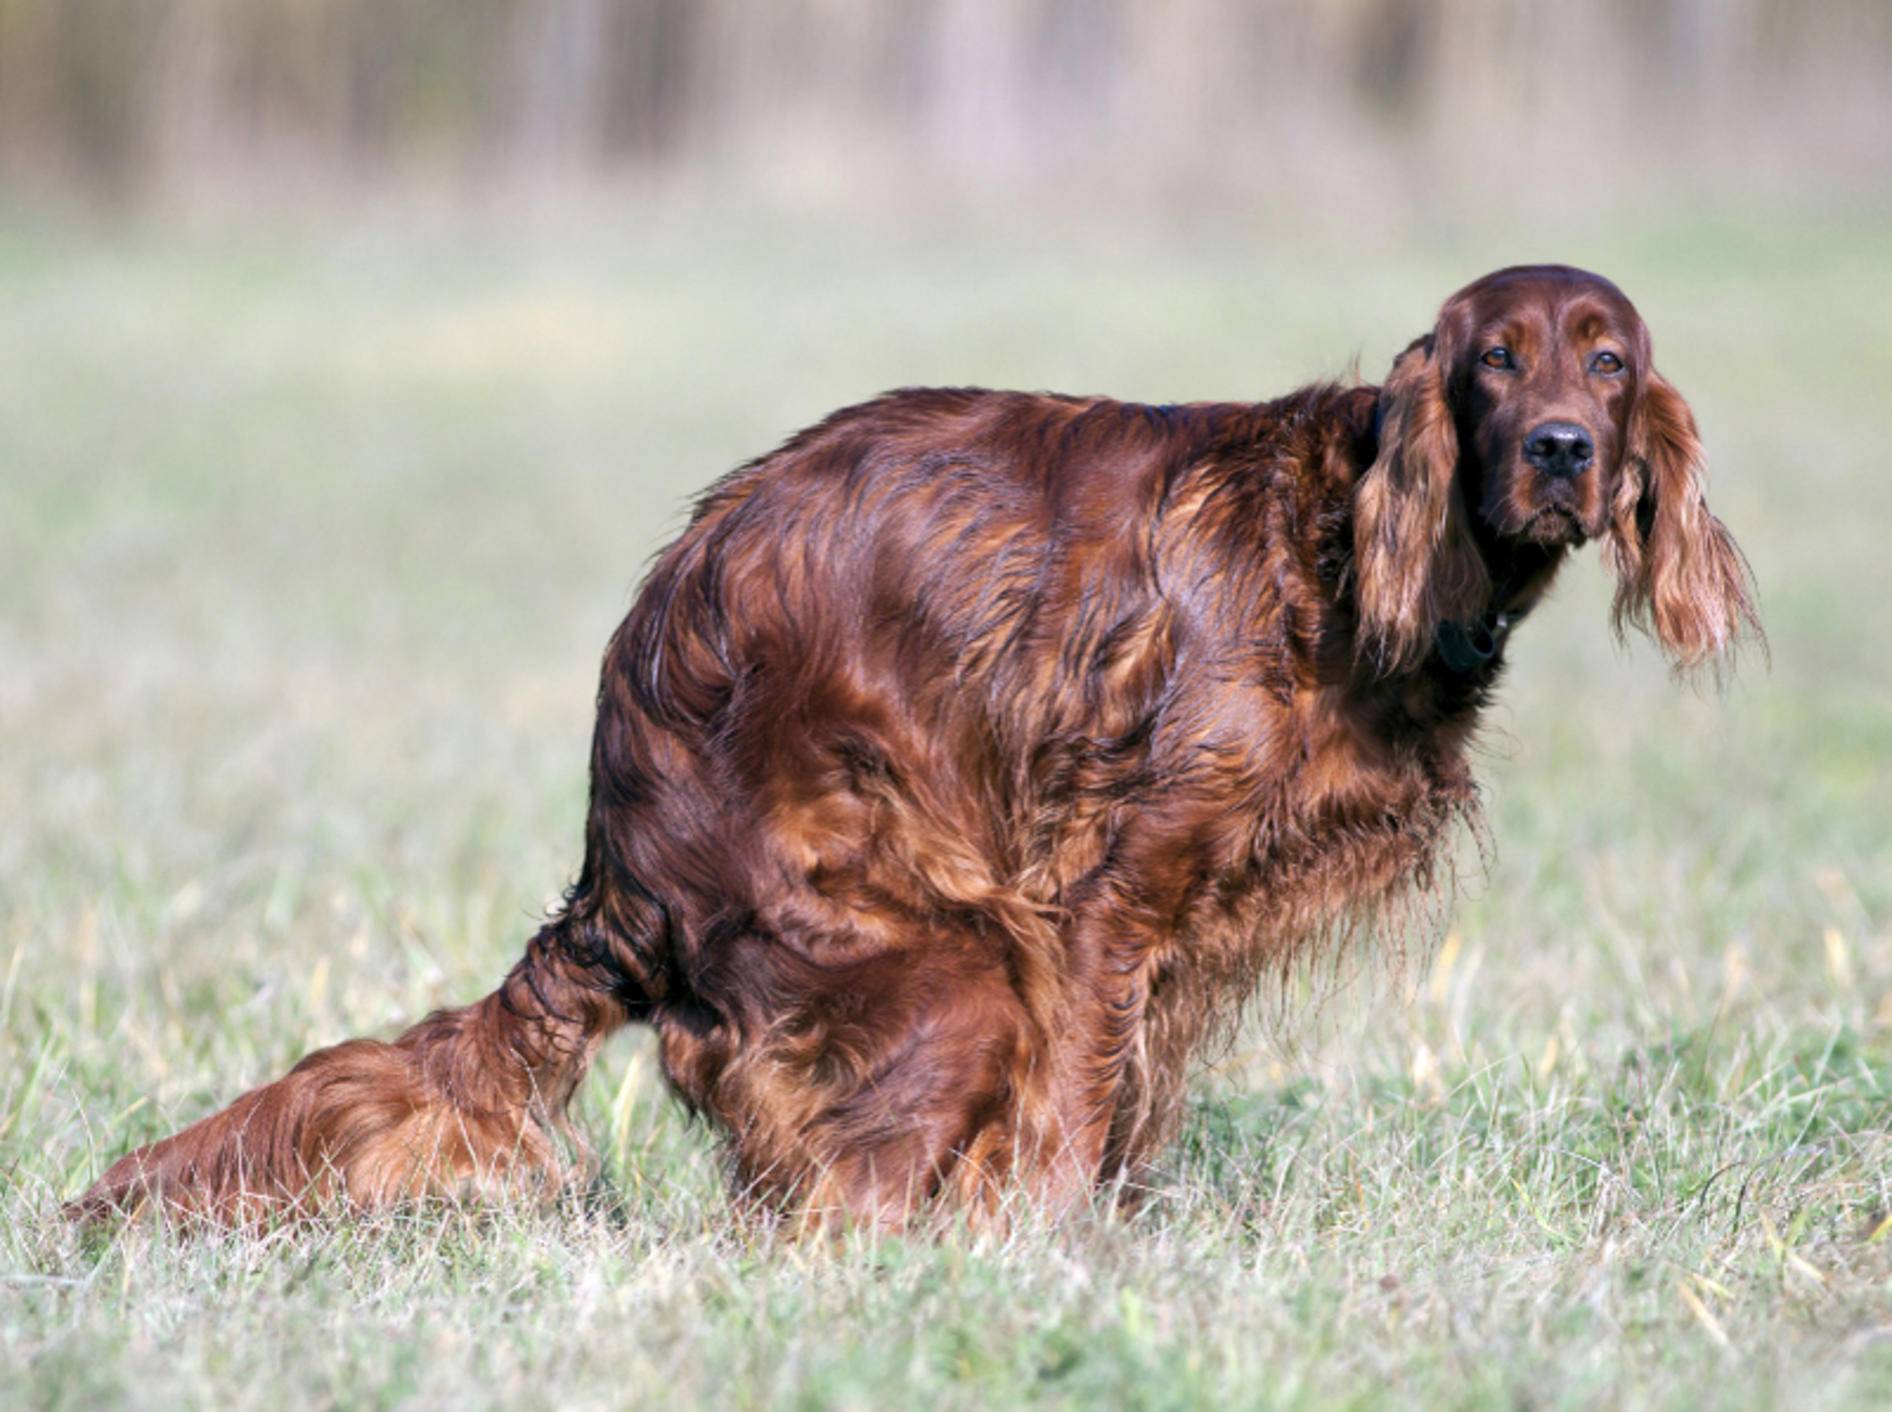 Schön entlang der Nord-Süd-Achse aufstellen, Mister Hund! – Shutterstock / Reddogs